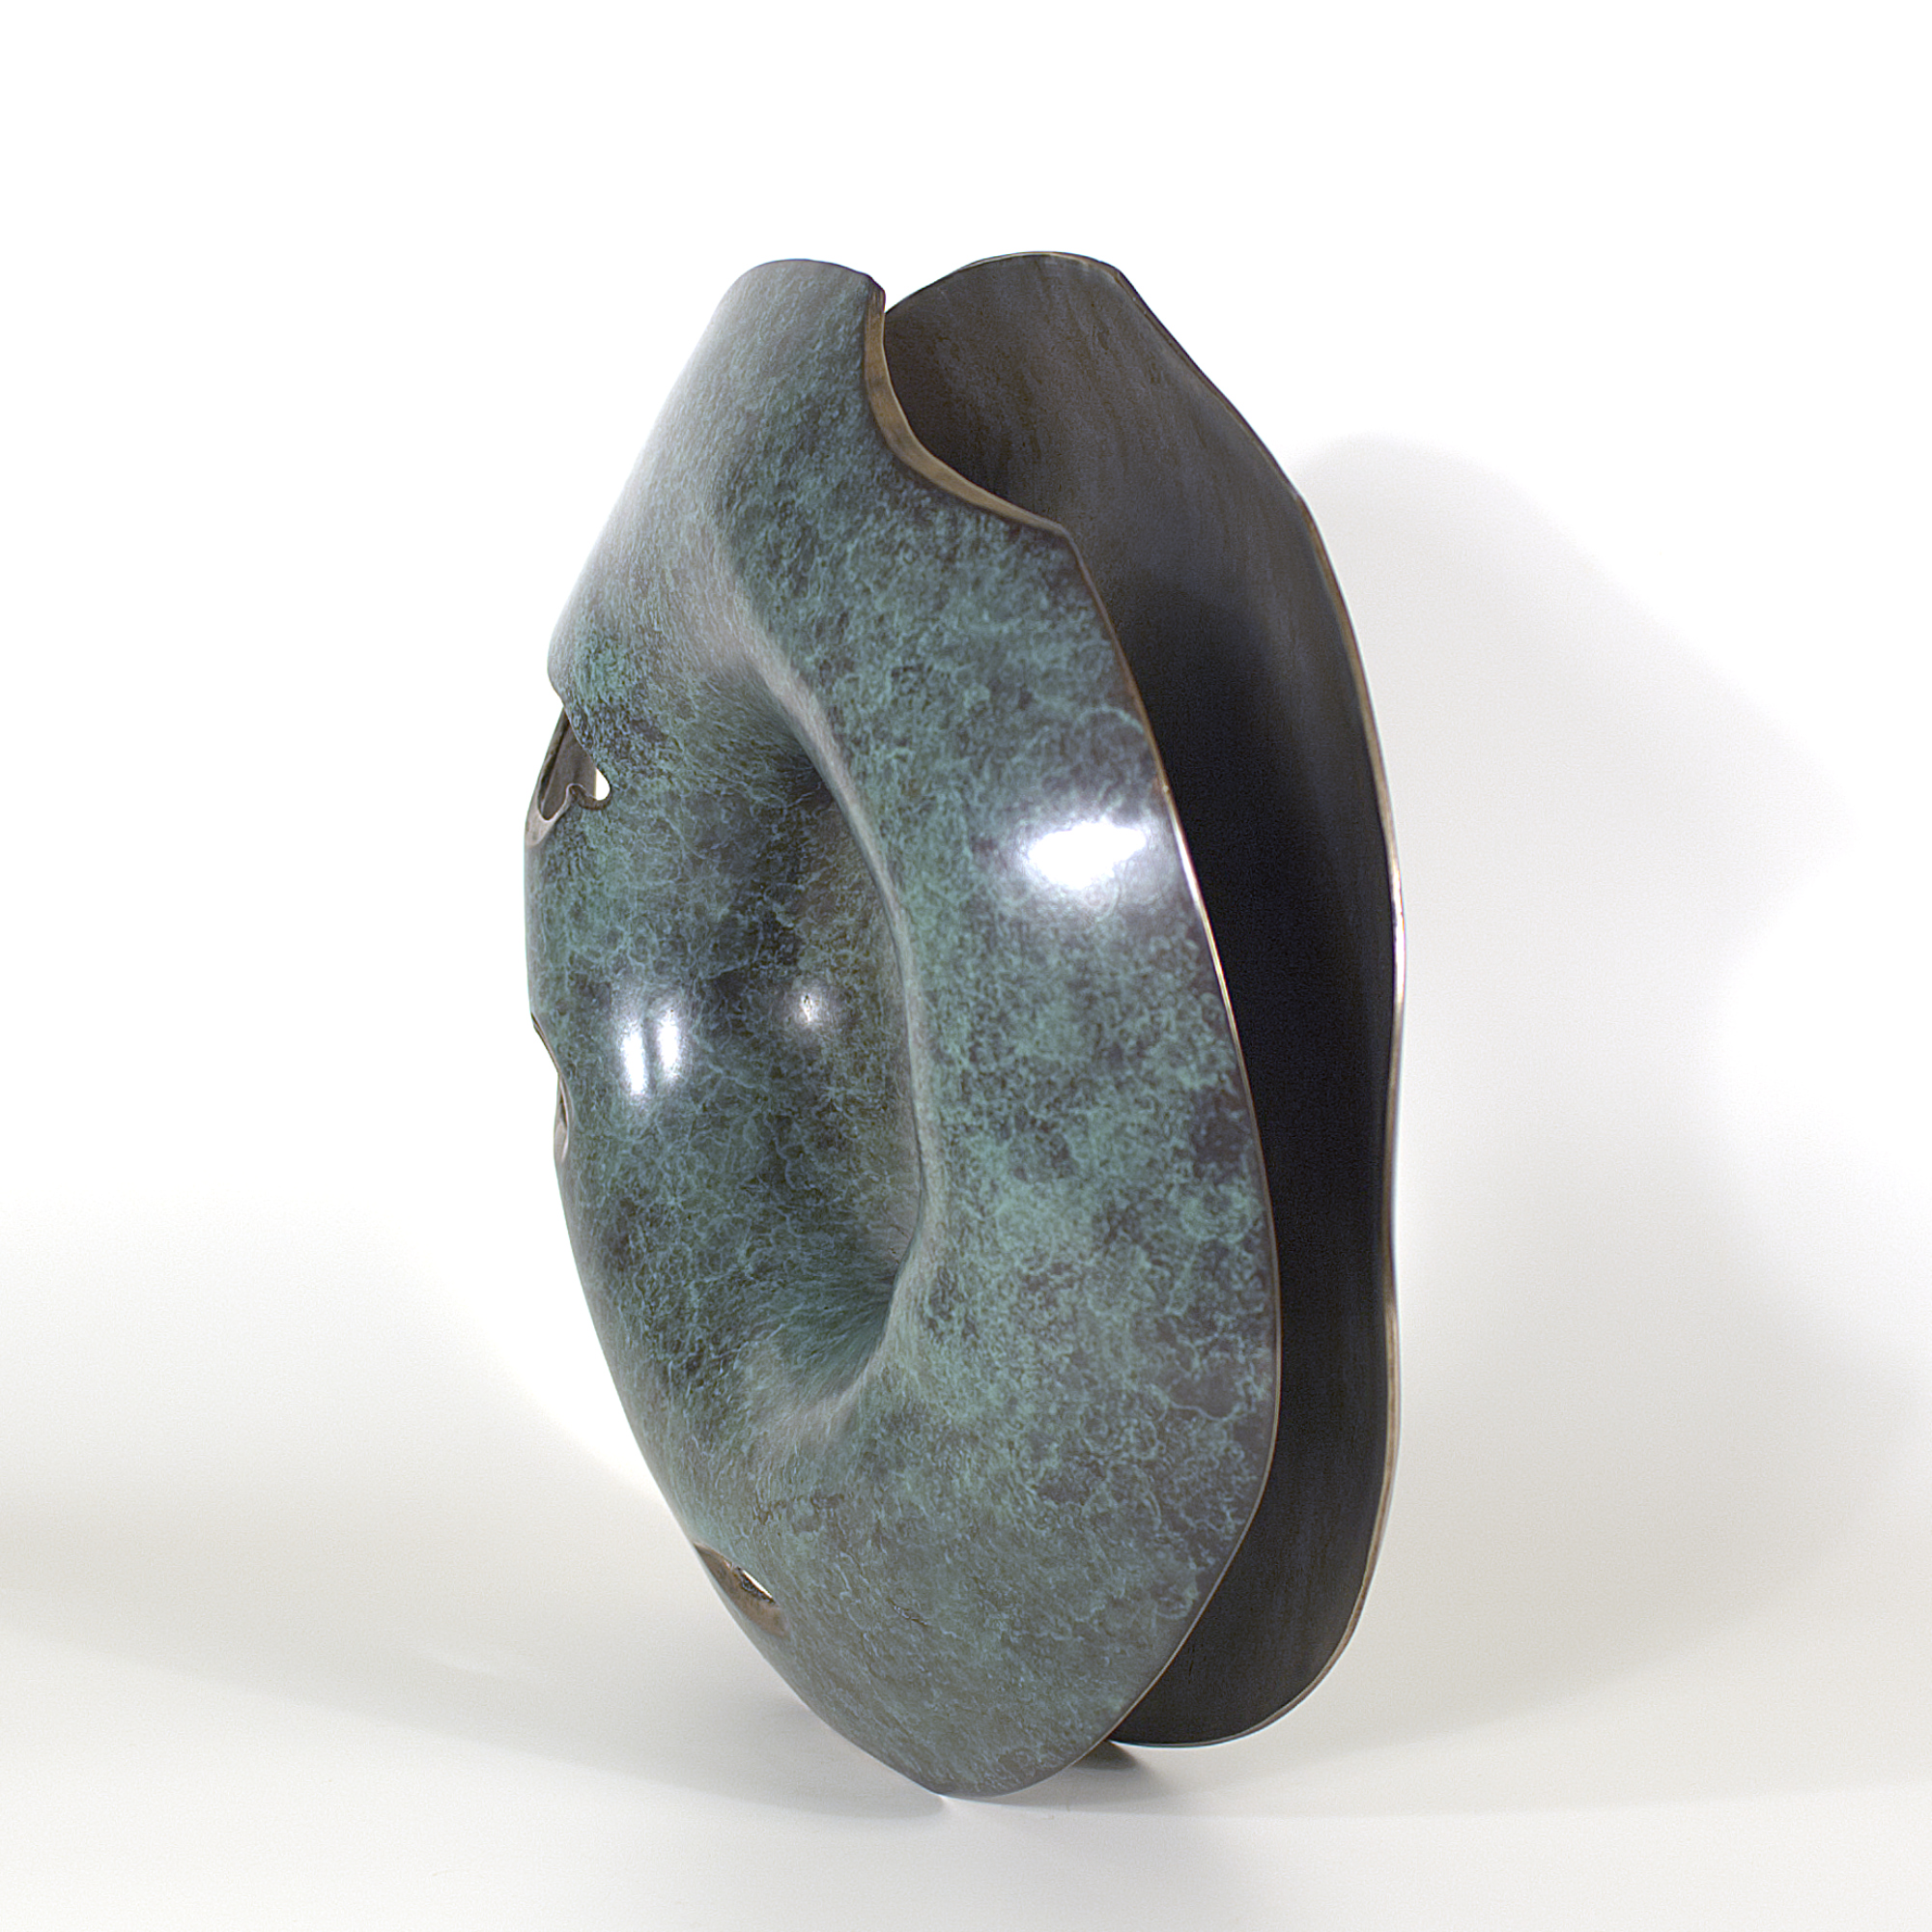 Annular form #4. Modern bronze sculpture by Steve Howlett. 2013